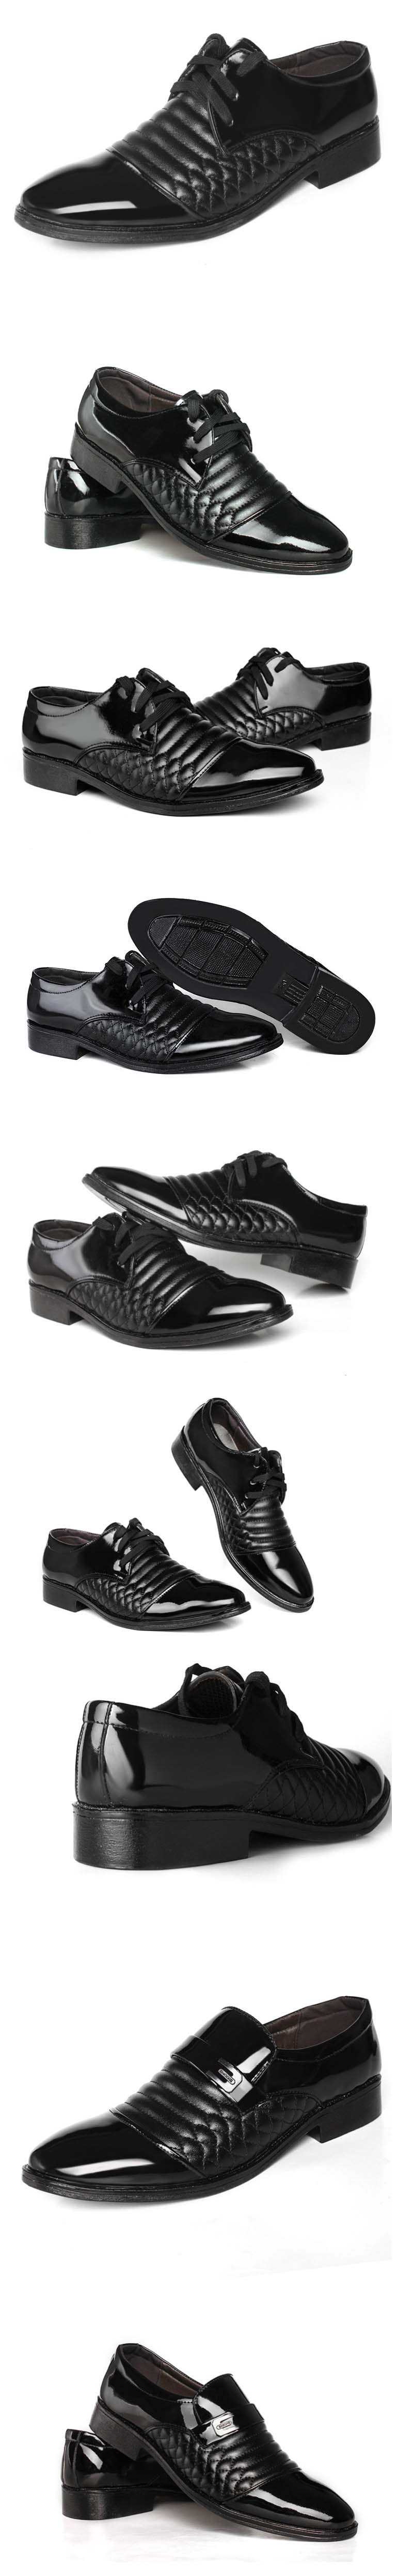 jual sepatu pantofel pria model terbaru dengan harga termurah temukan koleksi sepatu pantofel terlengkap hanya disini